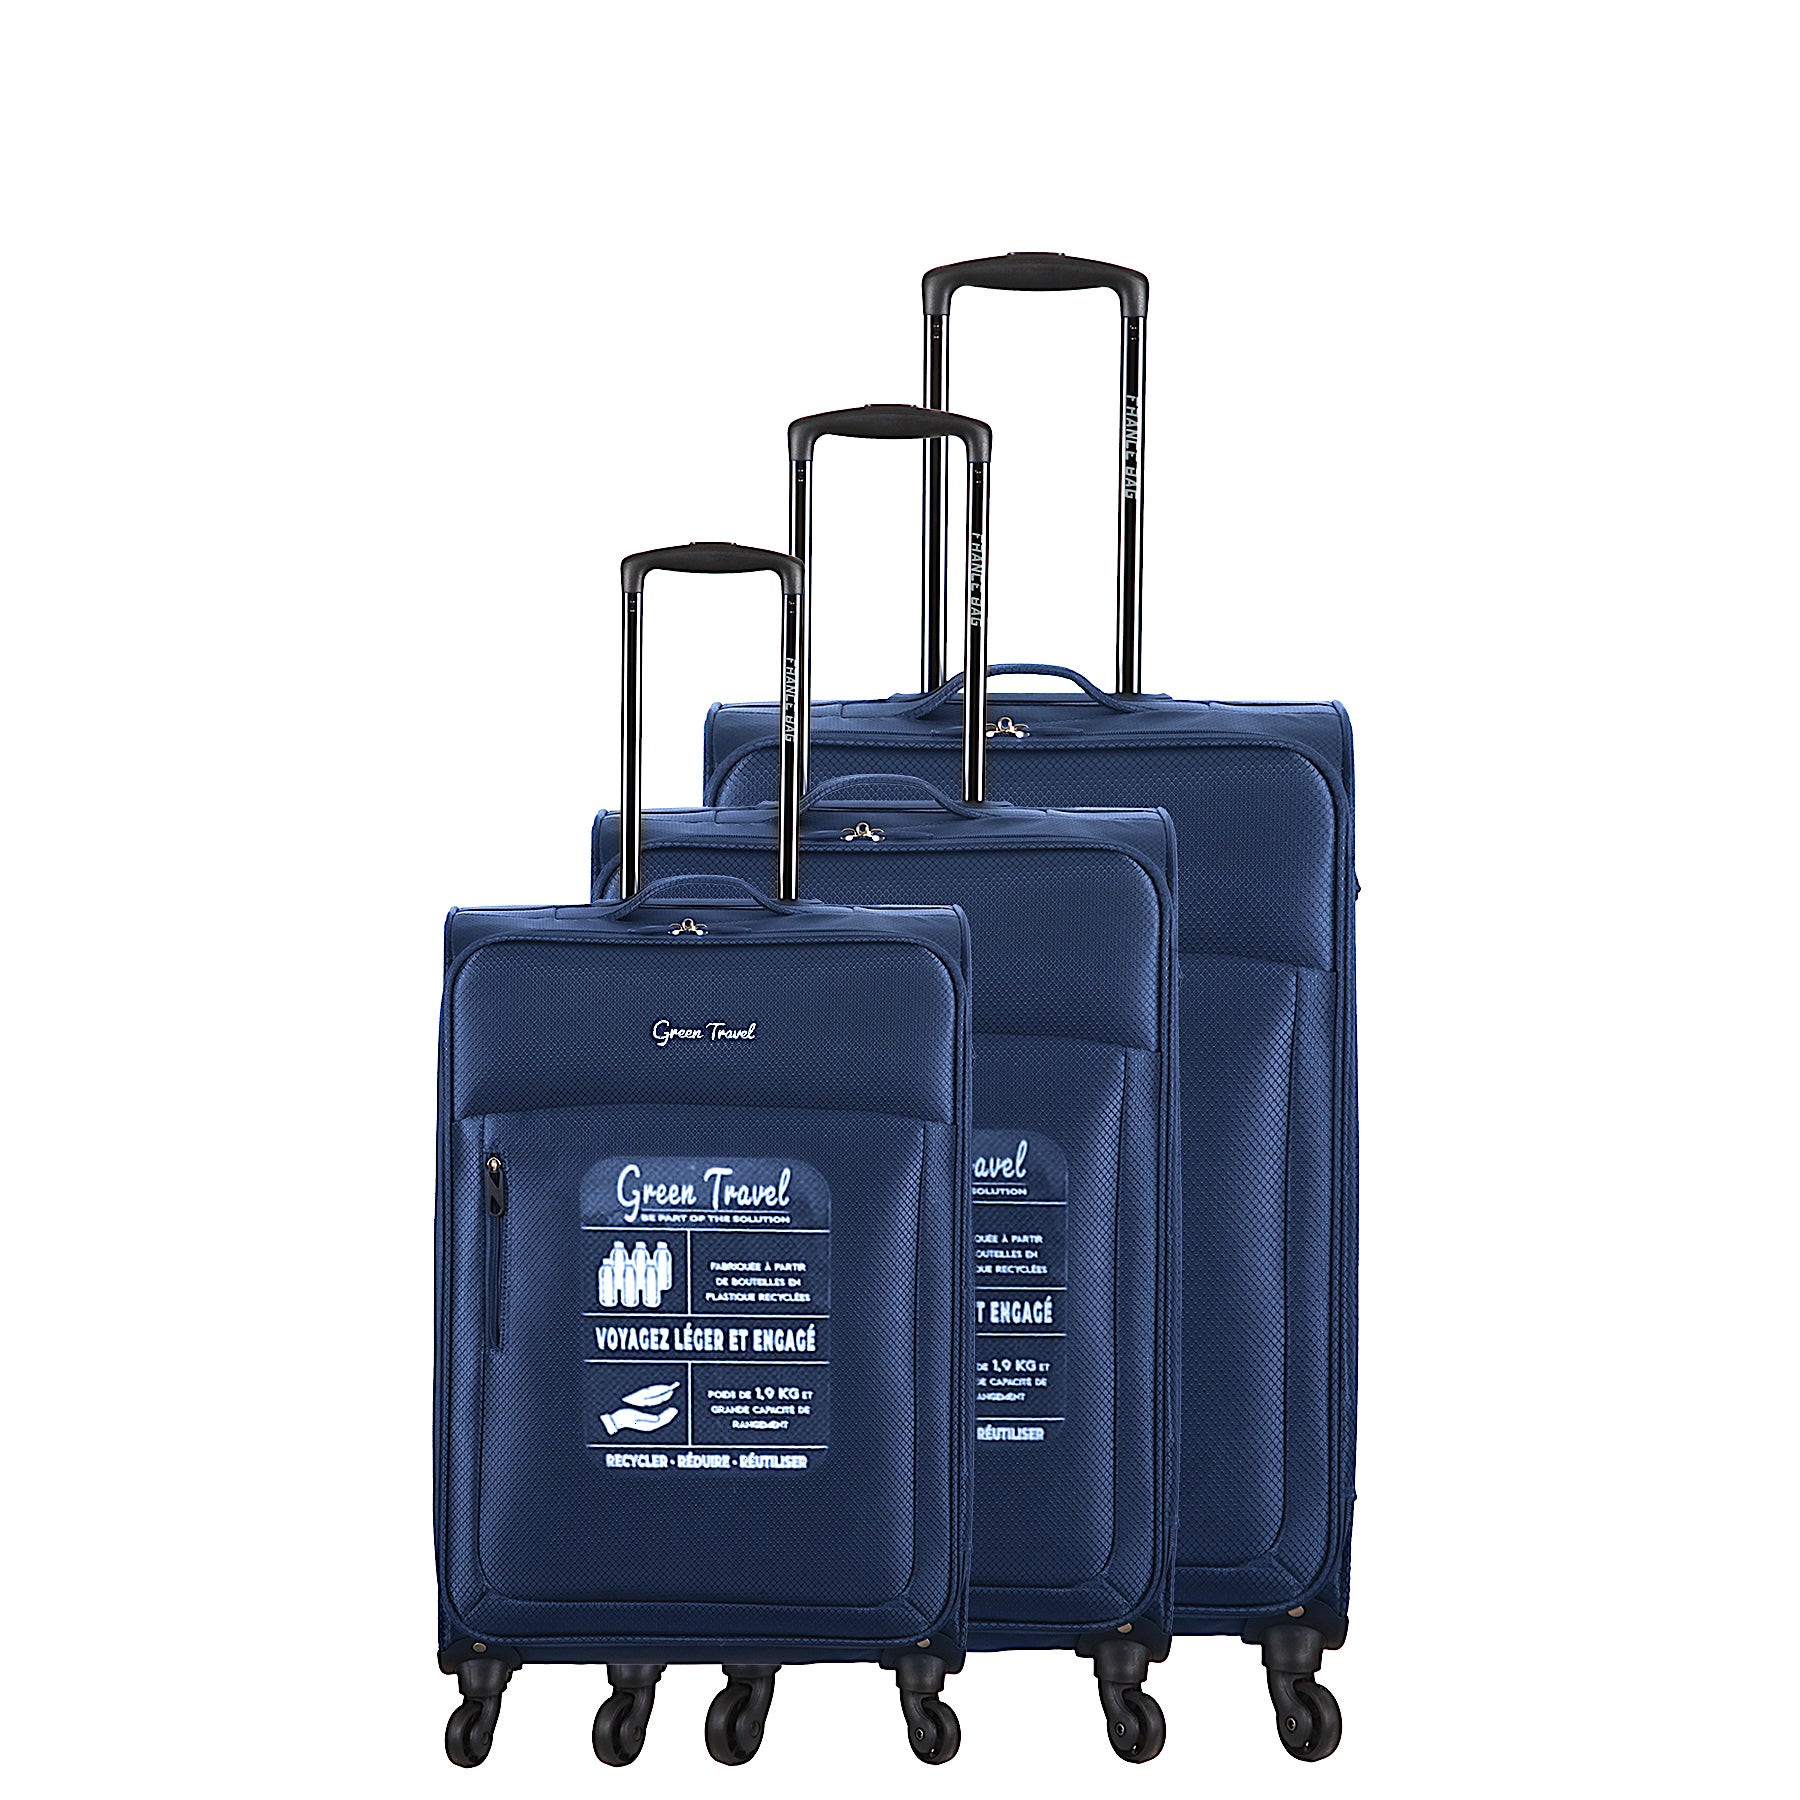 Set de valise souple 4 roues Nylon navy Calais set 3 valises